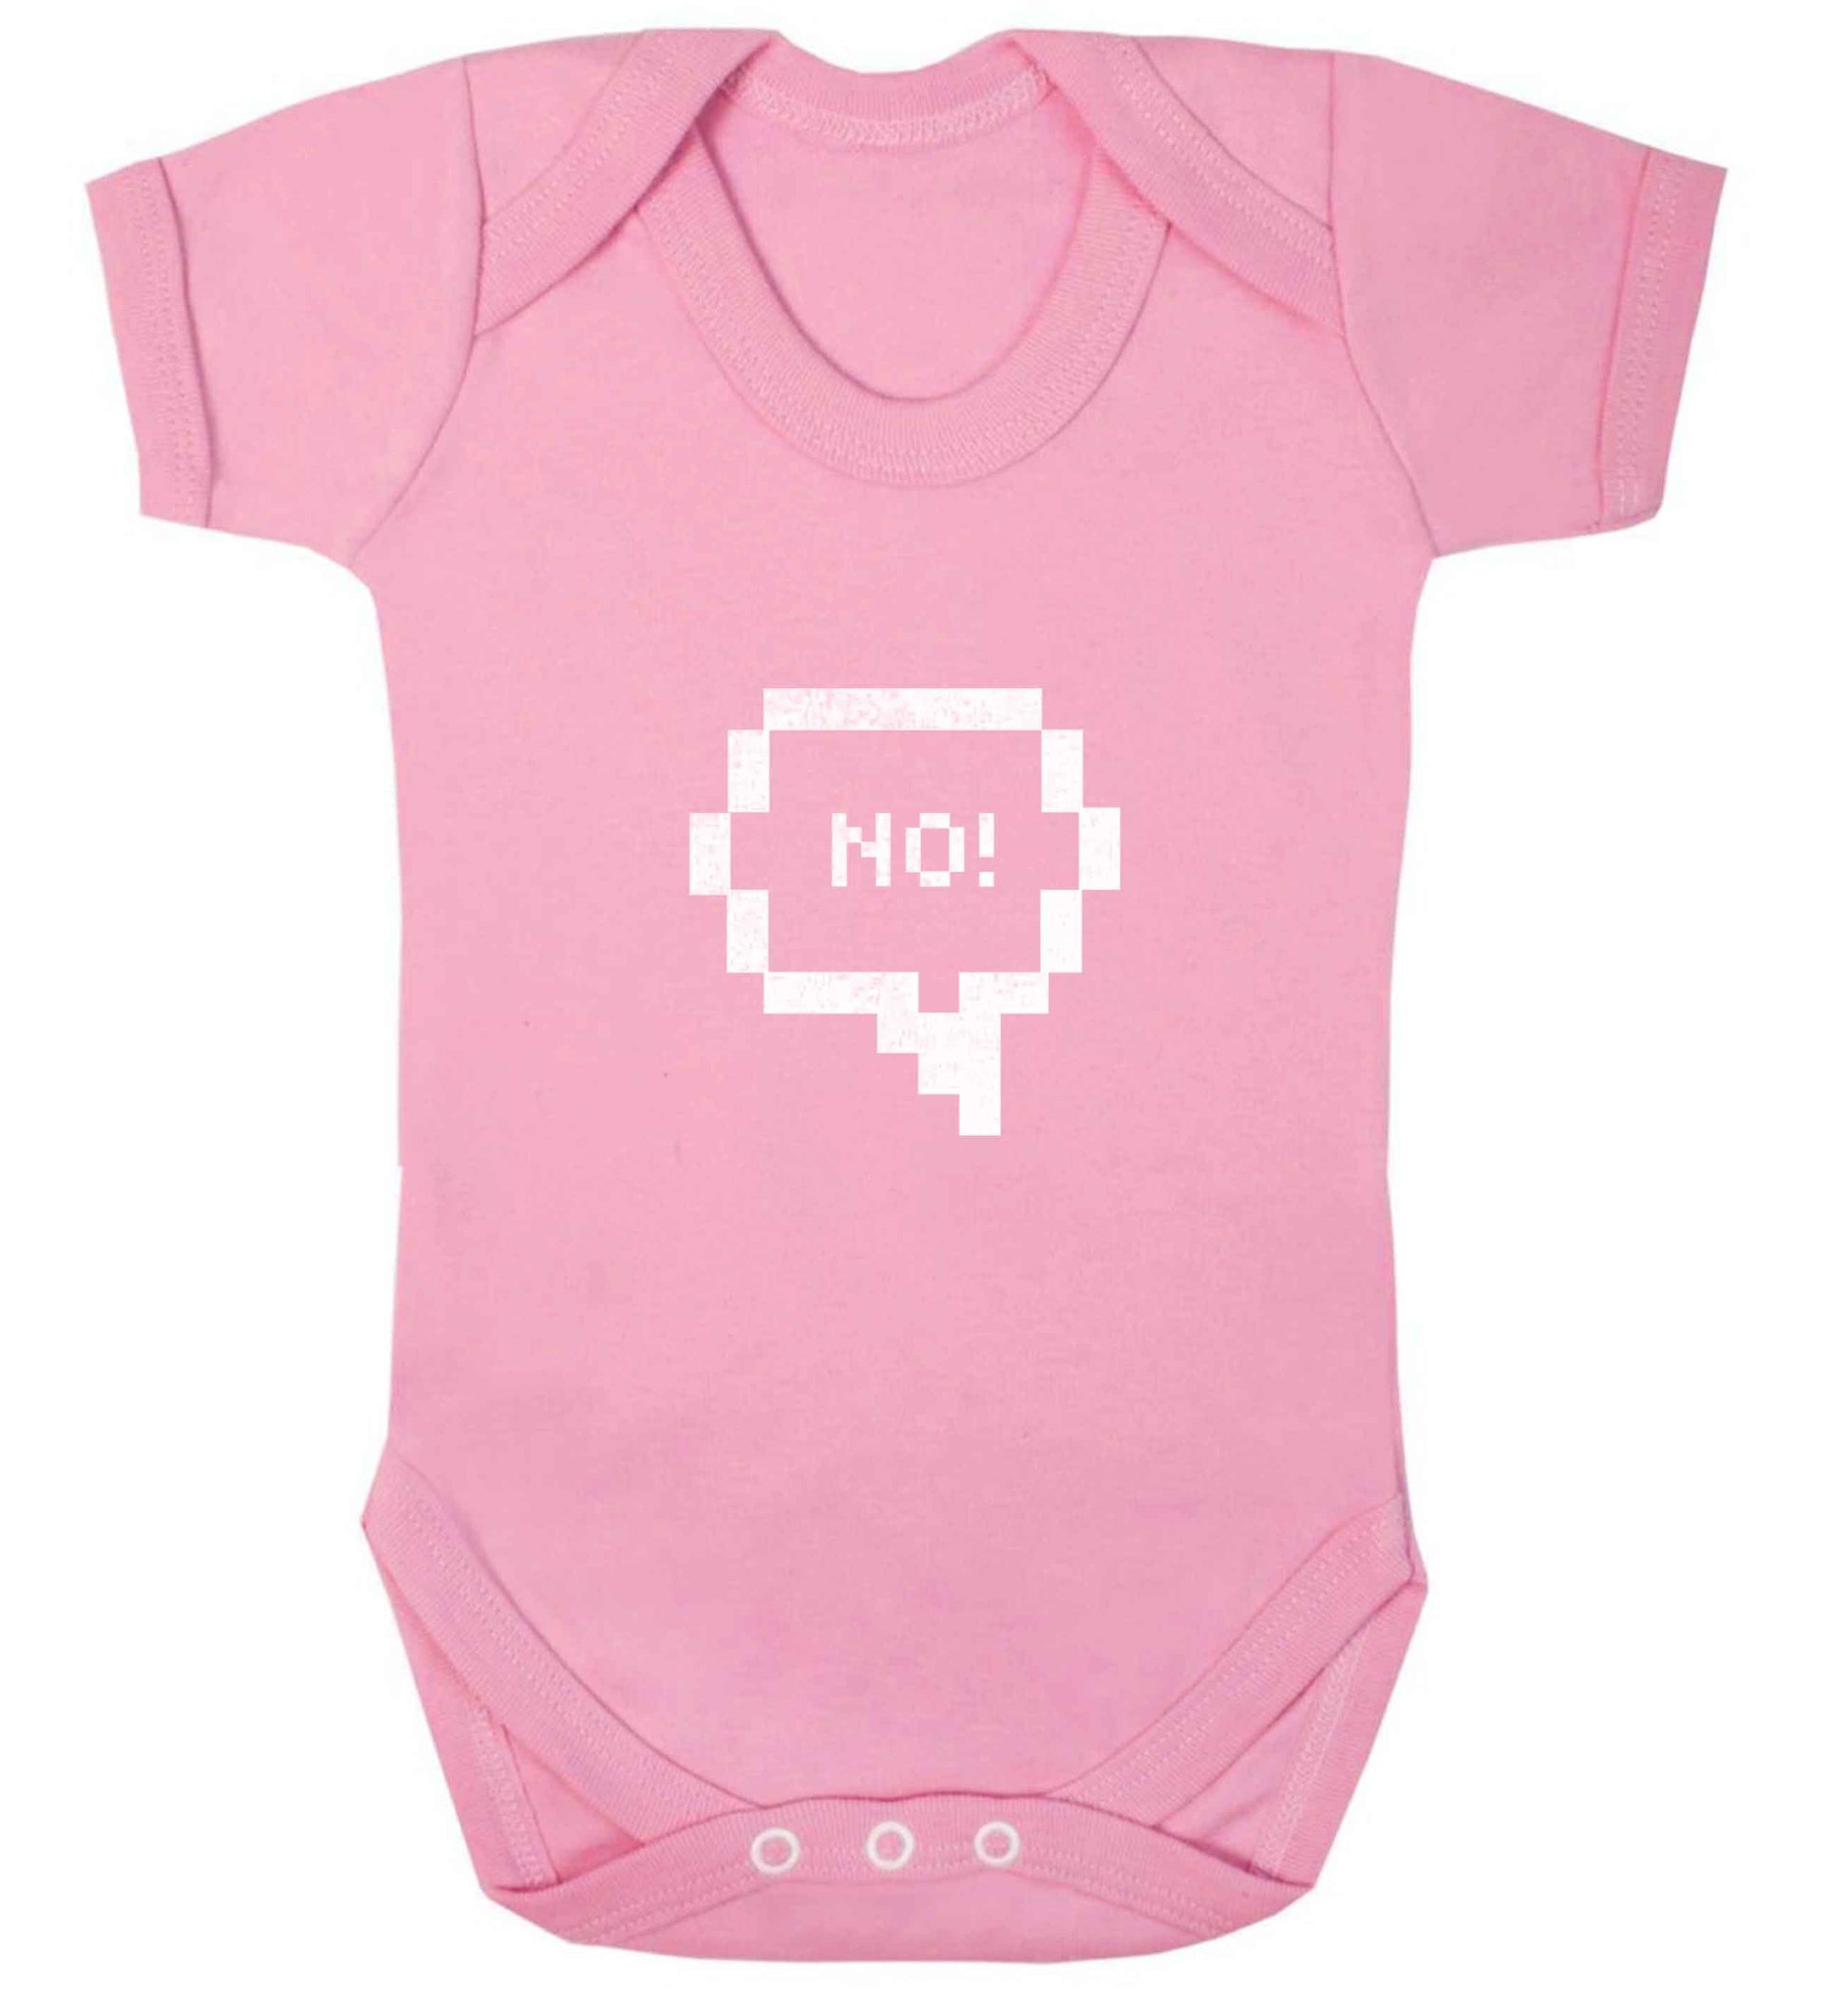 No baby vest pale pink 18-24 months